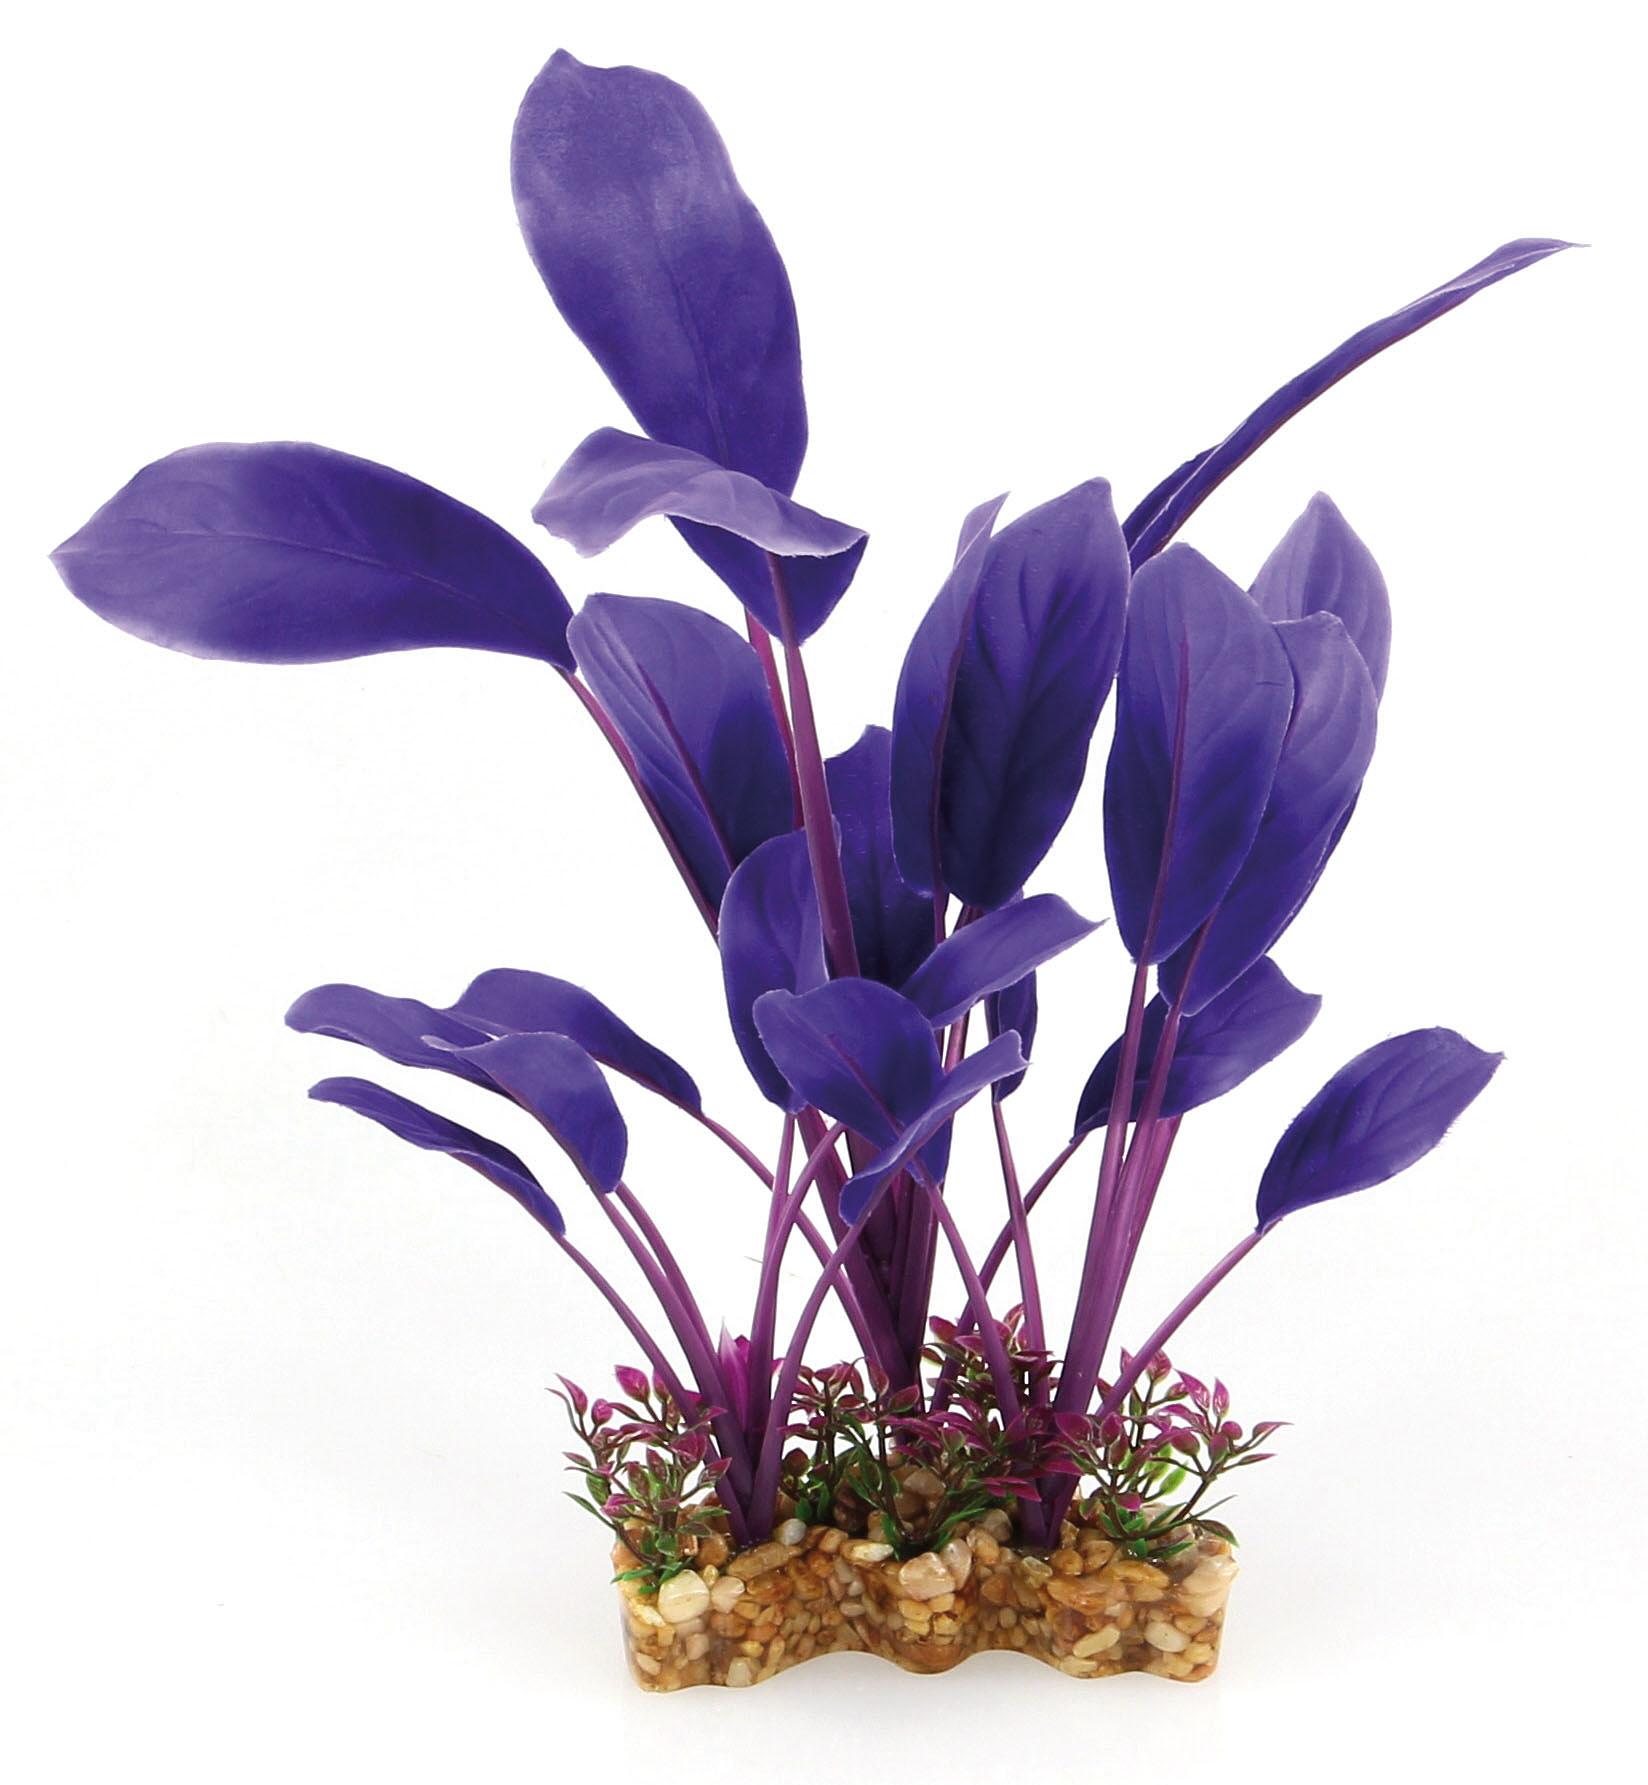 Amazonas Fantasy Plant VSB violett